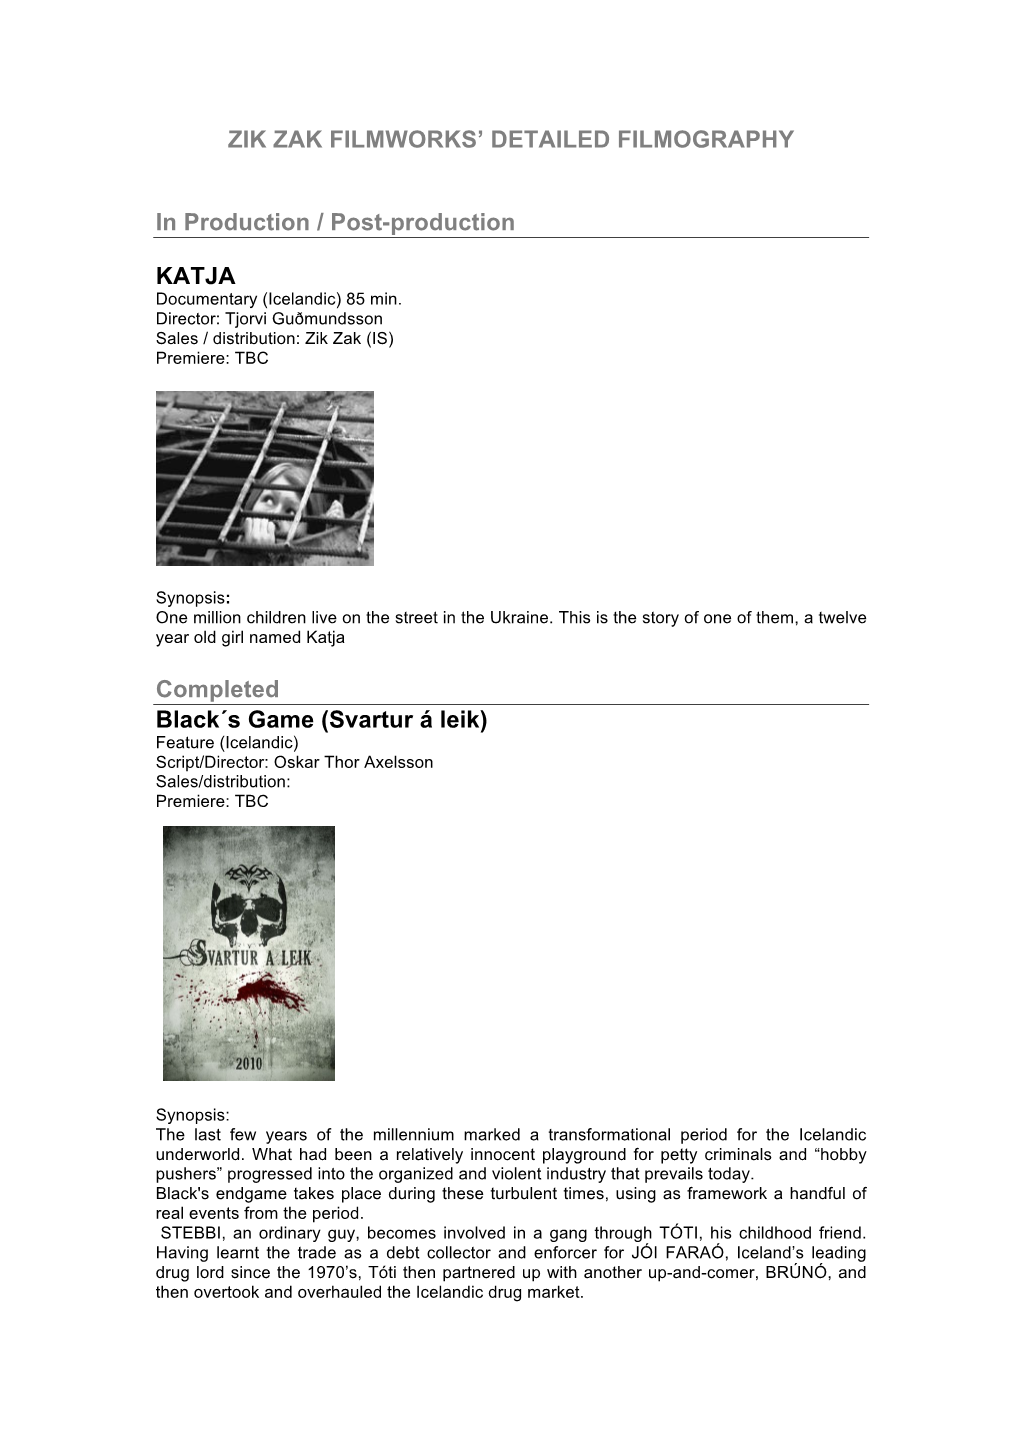 ZIK ZAK FILMWORKS' DETAILED FILMOGRAPHY in Production / Post-Production KATJA Completed Black´S Game (Svartur Á Leik)